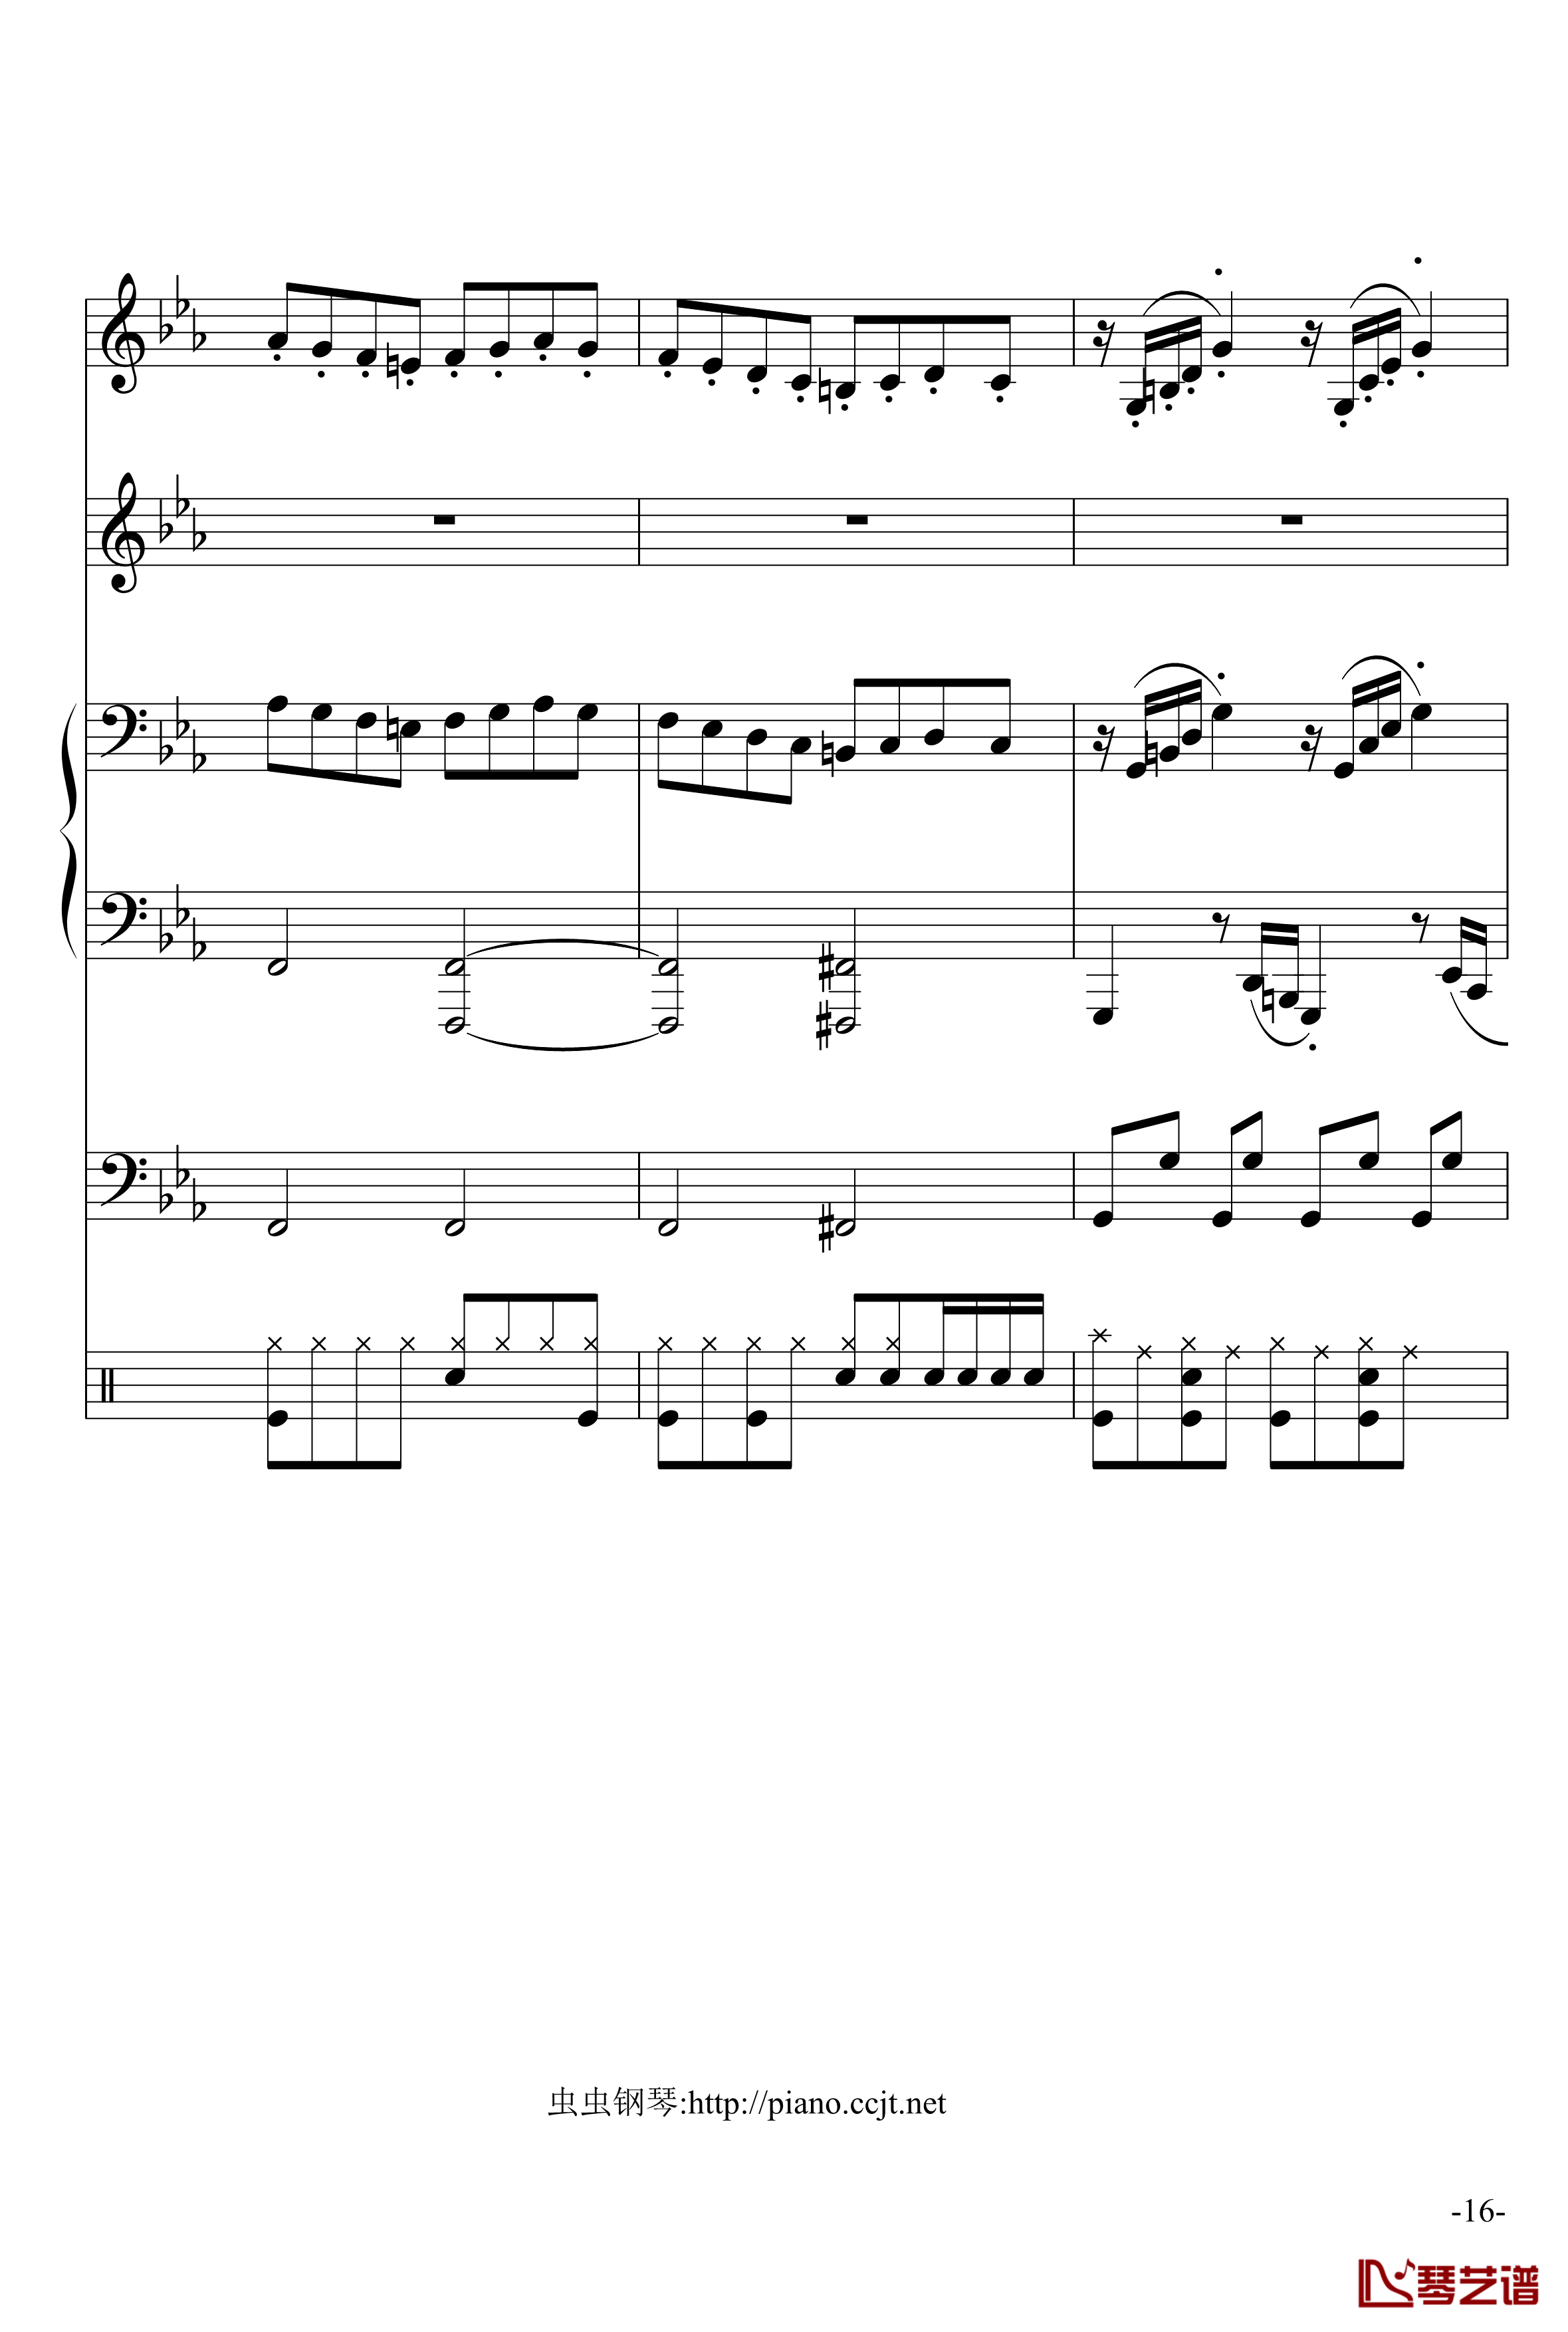 悲怆奏鸣曲钢琴谱-加小乐队-贝多芬-beethoven16